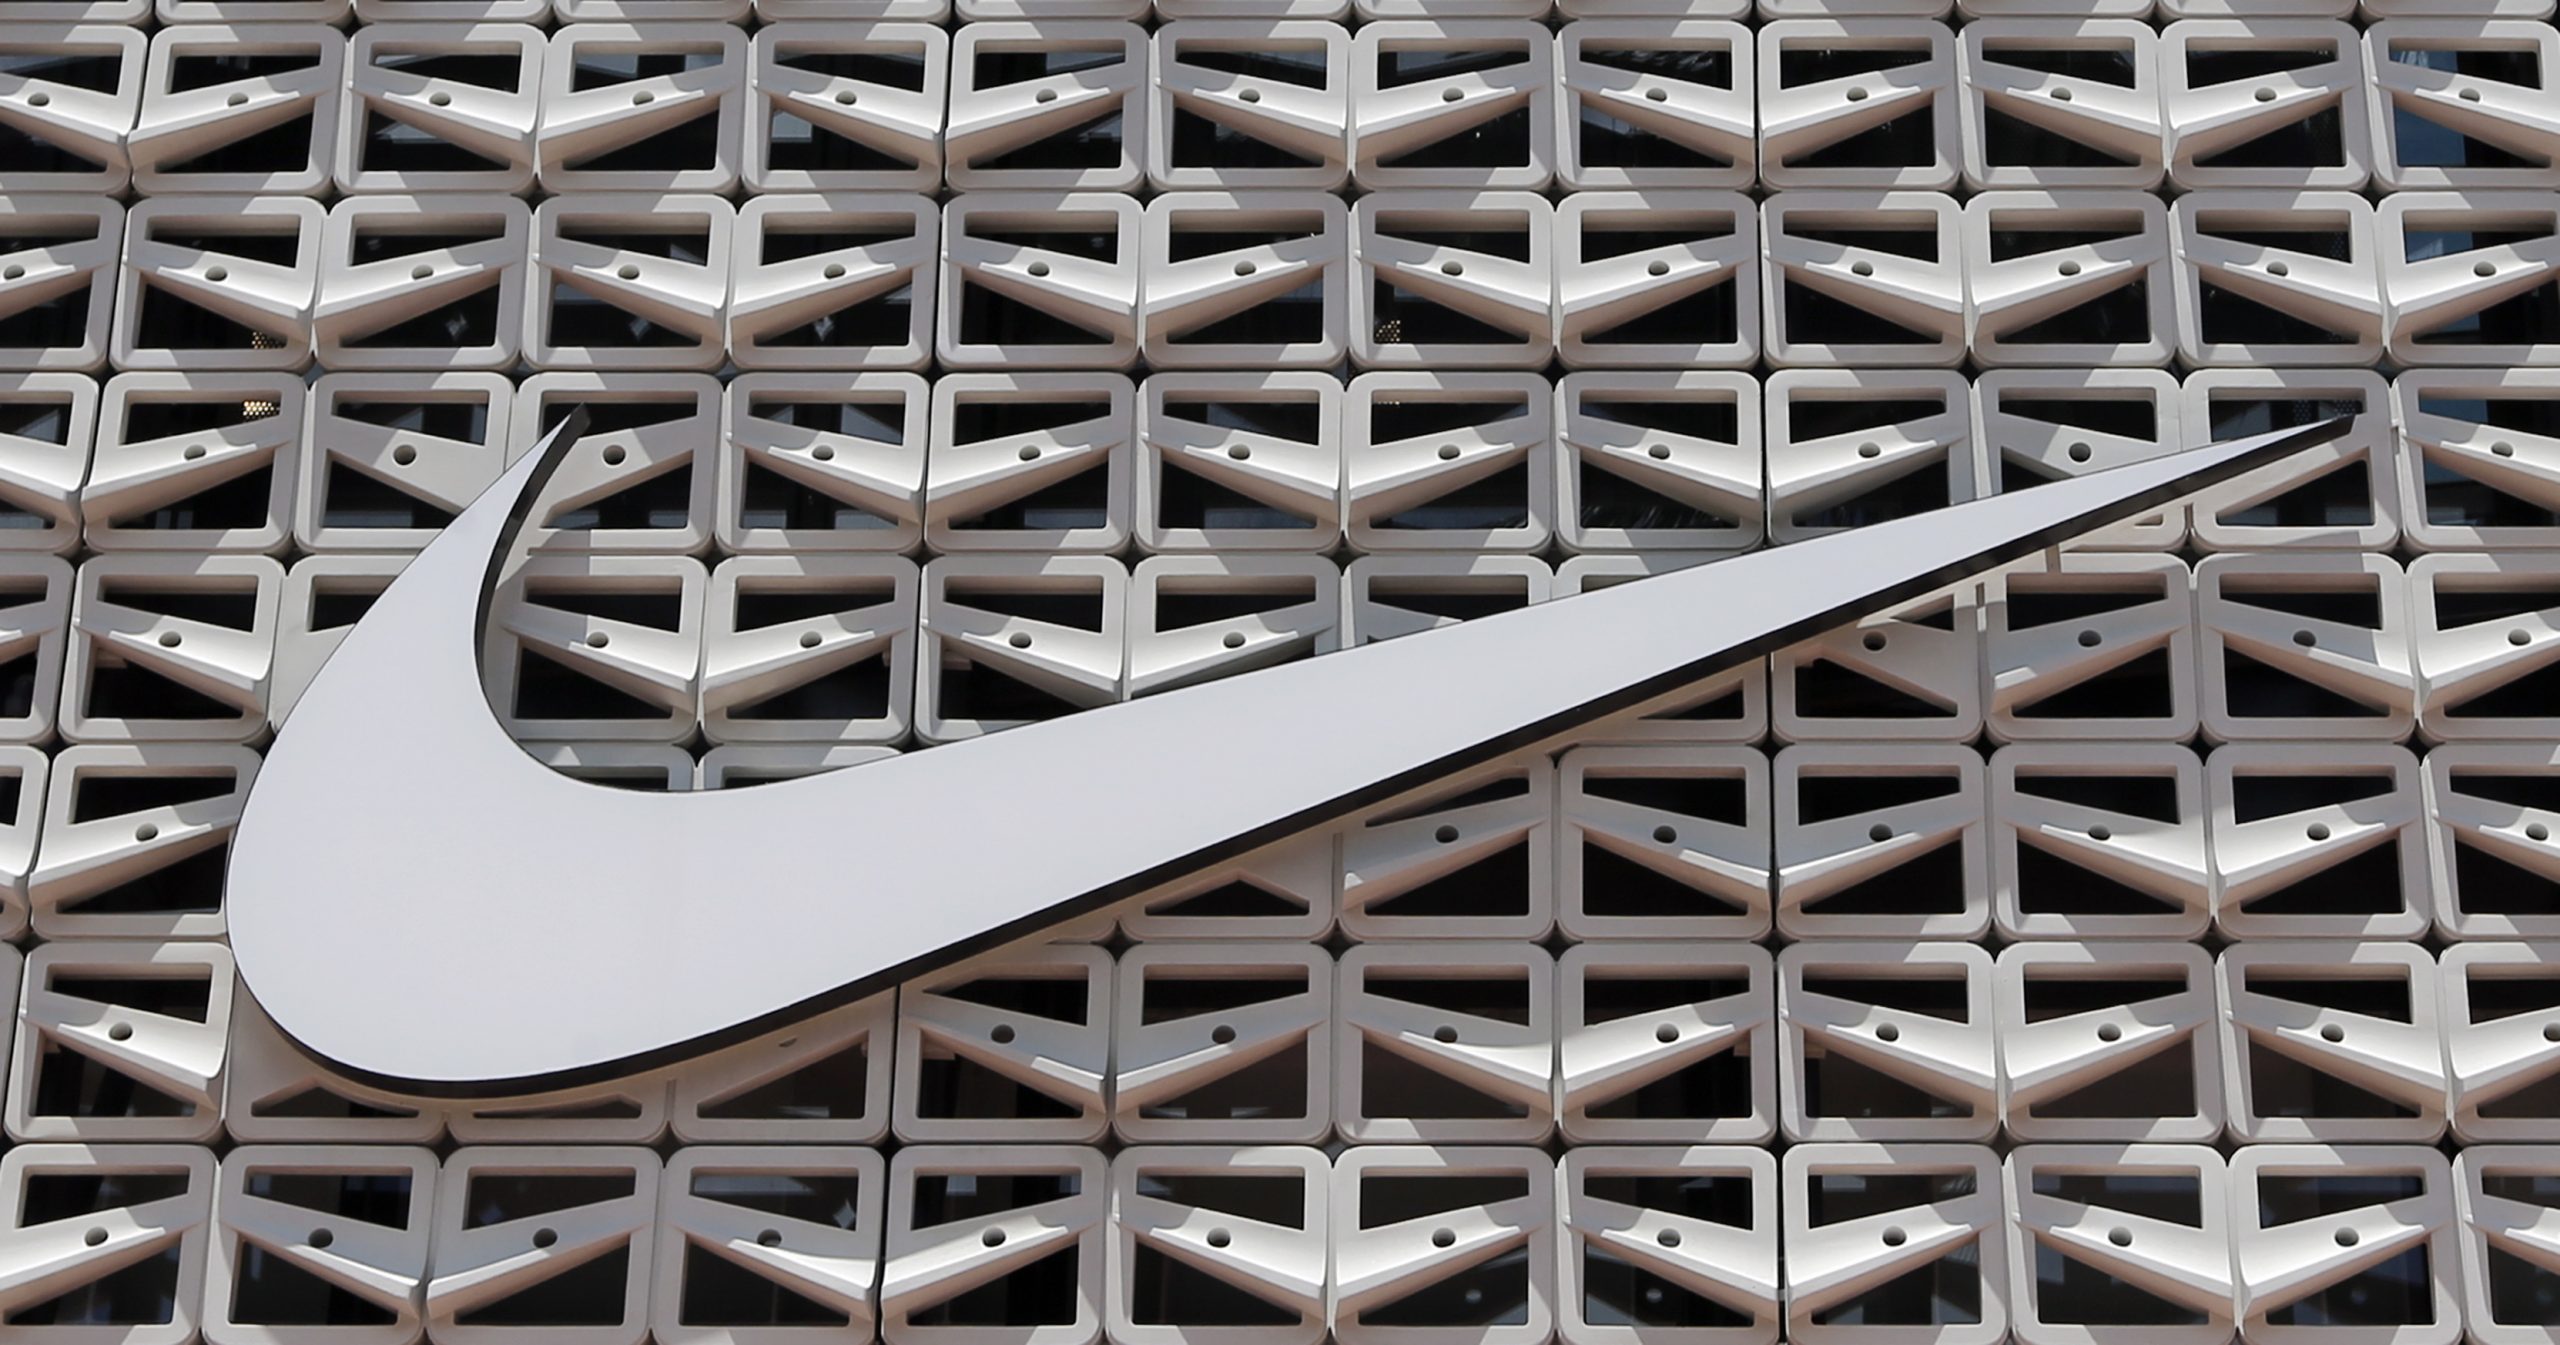 Nike确定“全面退出俄罗斯市场” 数个月内终止业务